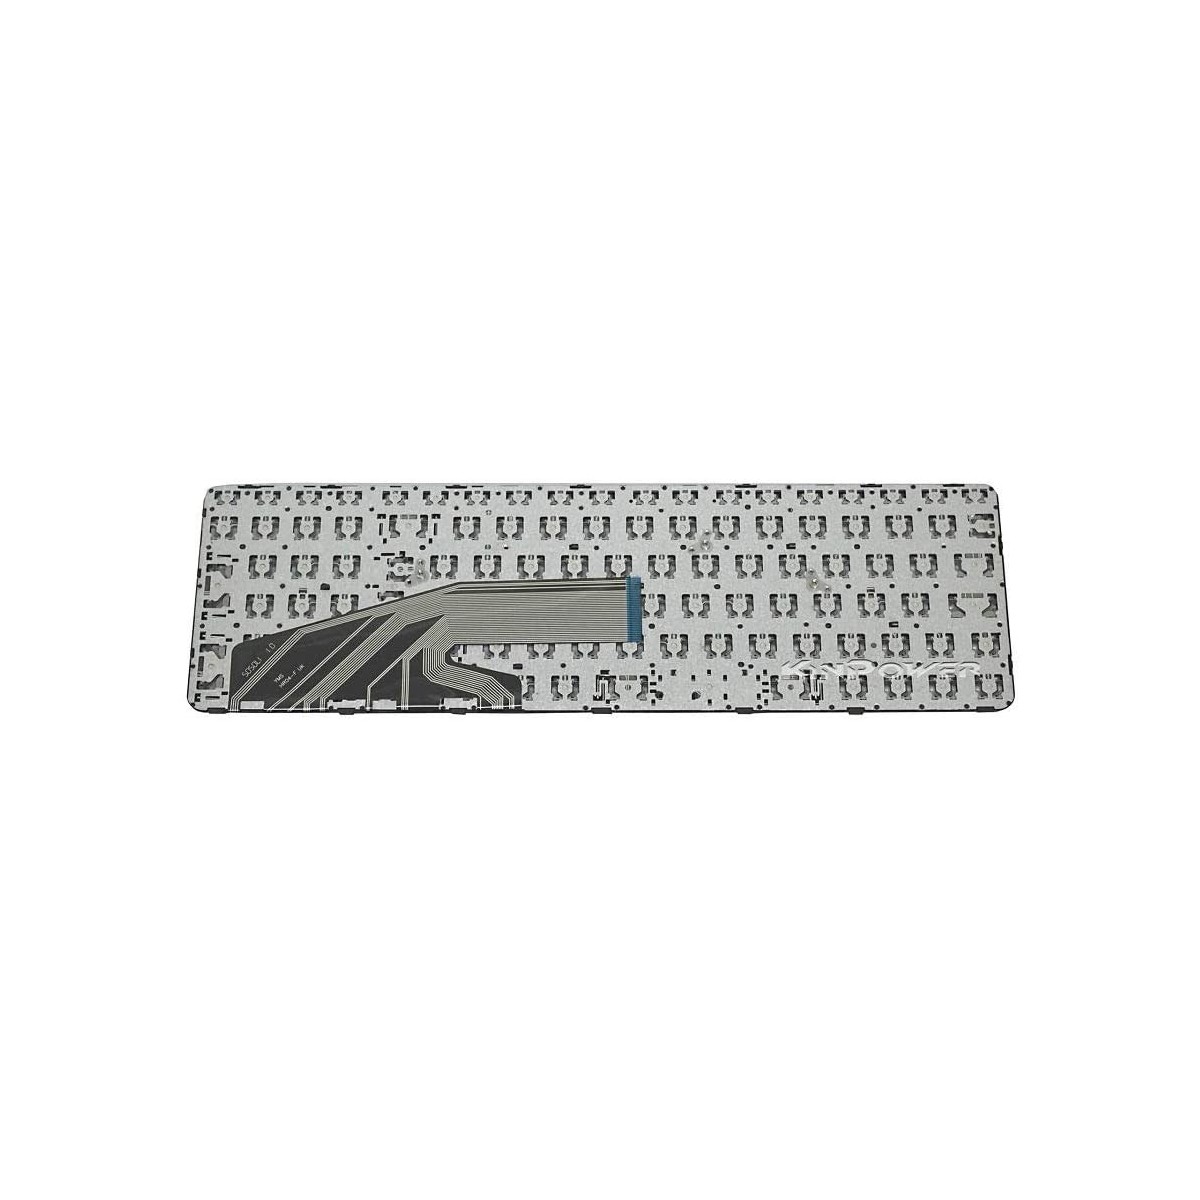 Clavier Français compatible Pour HP ProBook 470 G3 SERIES SG-80400-XUA